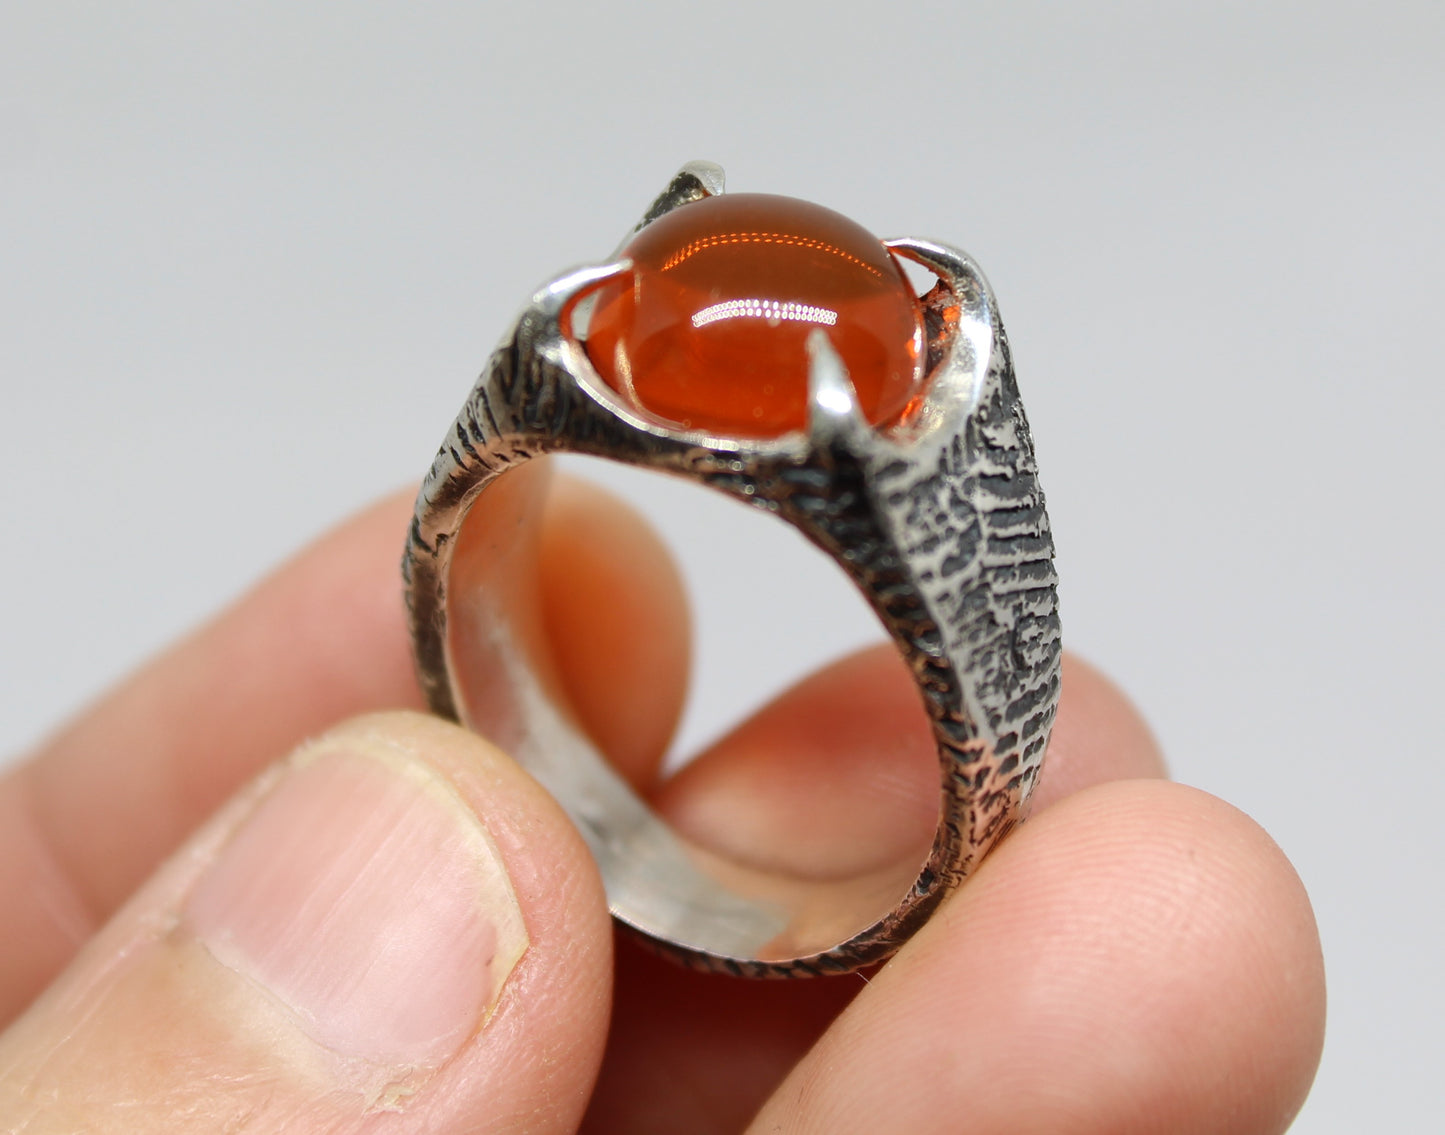 Orange Fire Opal Sterling Silver Ring - Unisex Gemstone Jewelry #216